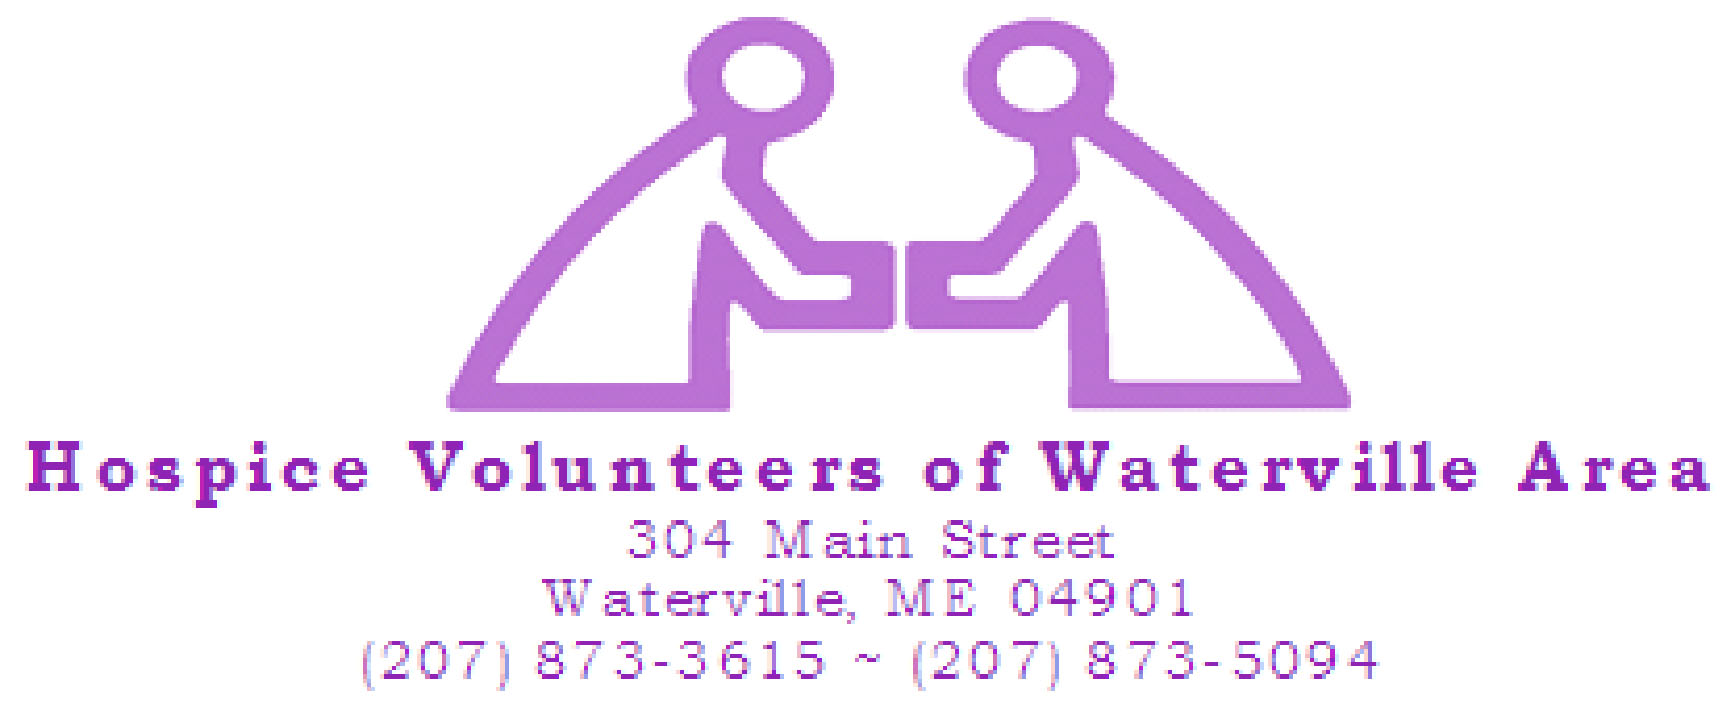 Hospice-Volunteers-of-Waterville-Area-logo